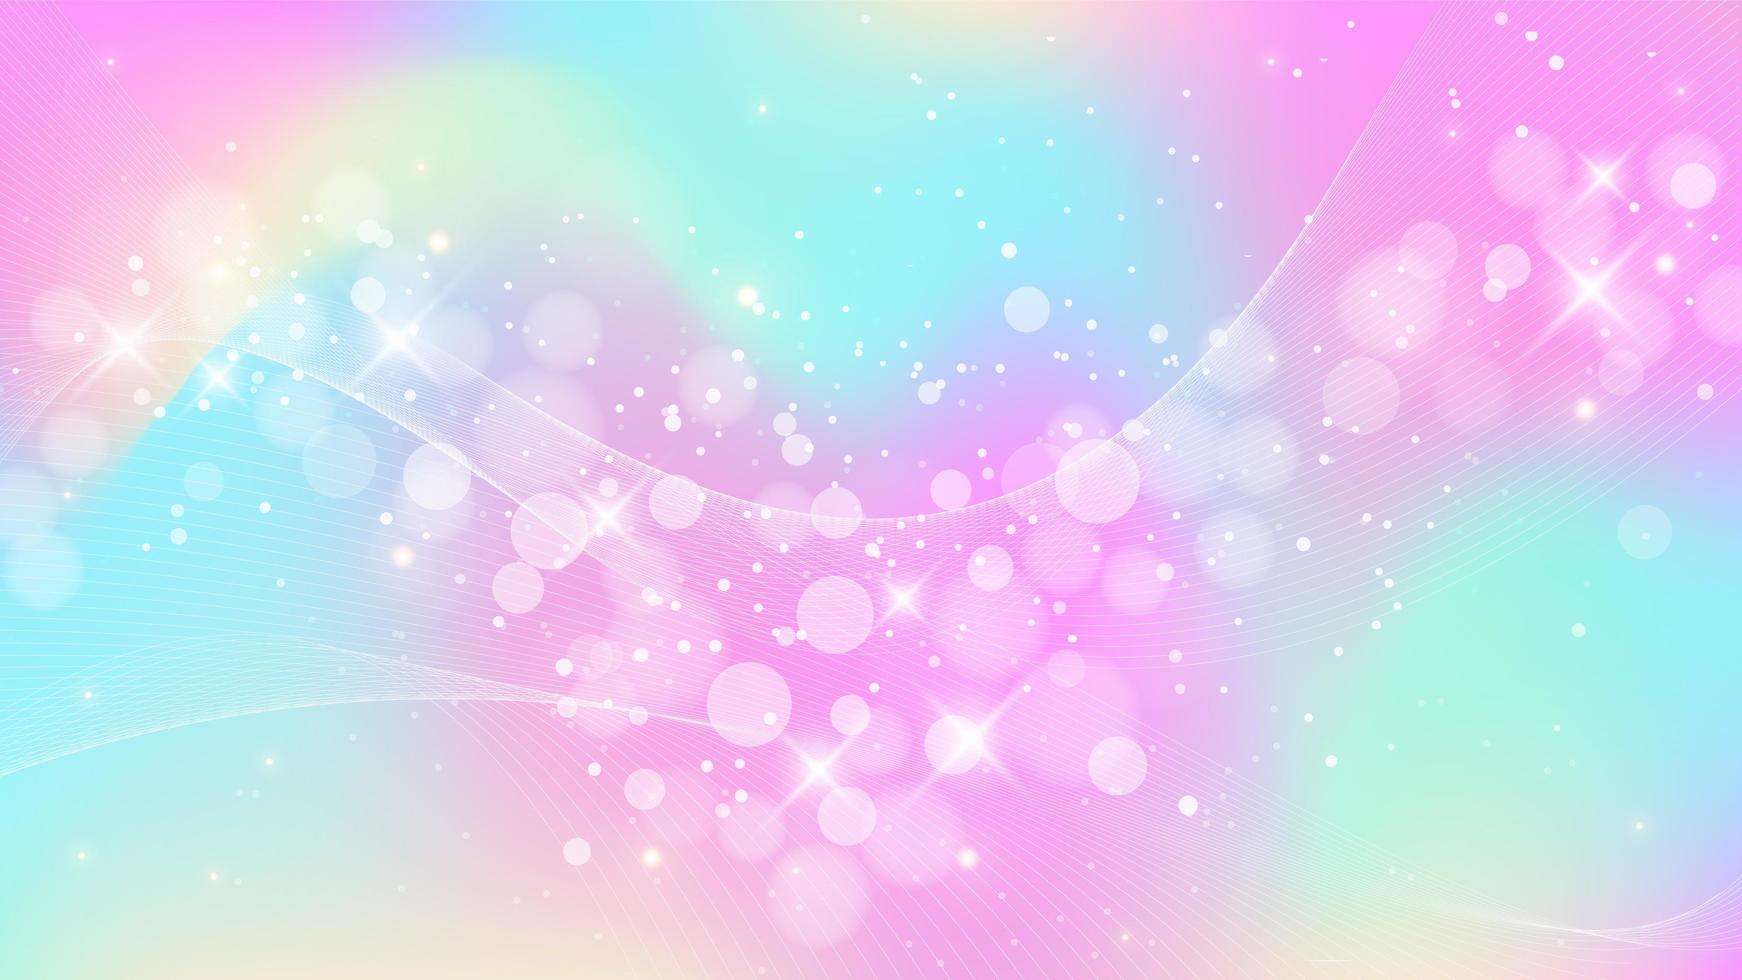 fond de fantaisie arc-en-ciel. illustration holographique aux couleurs pastel. ciel de licorne multicolore avec étoiles et bokeh. vecteur